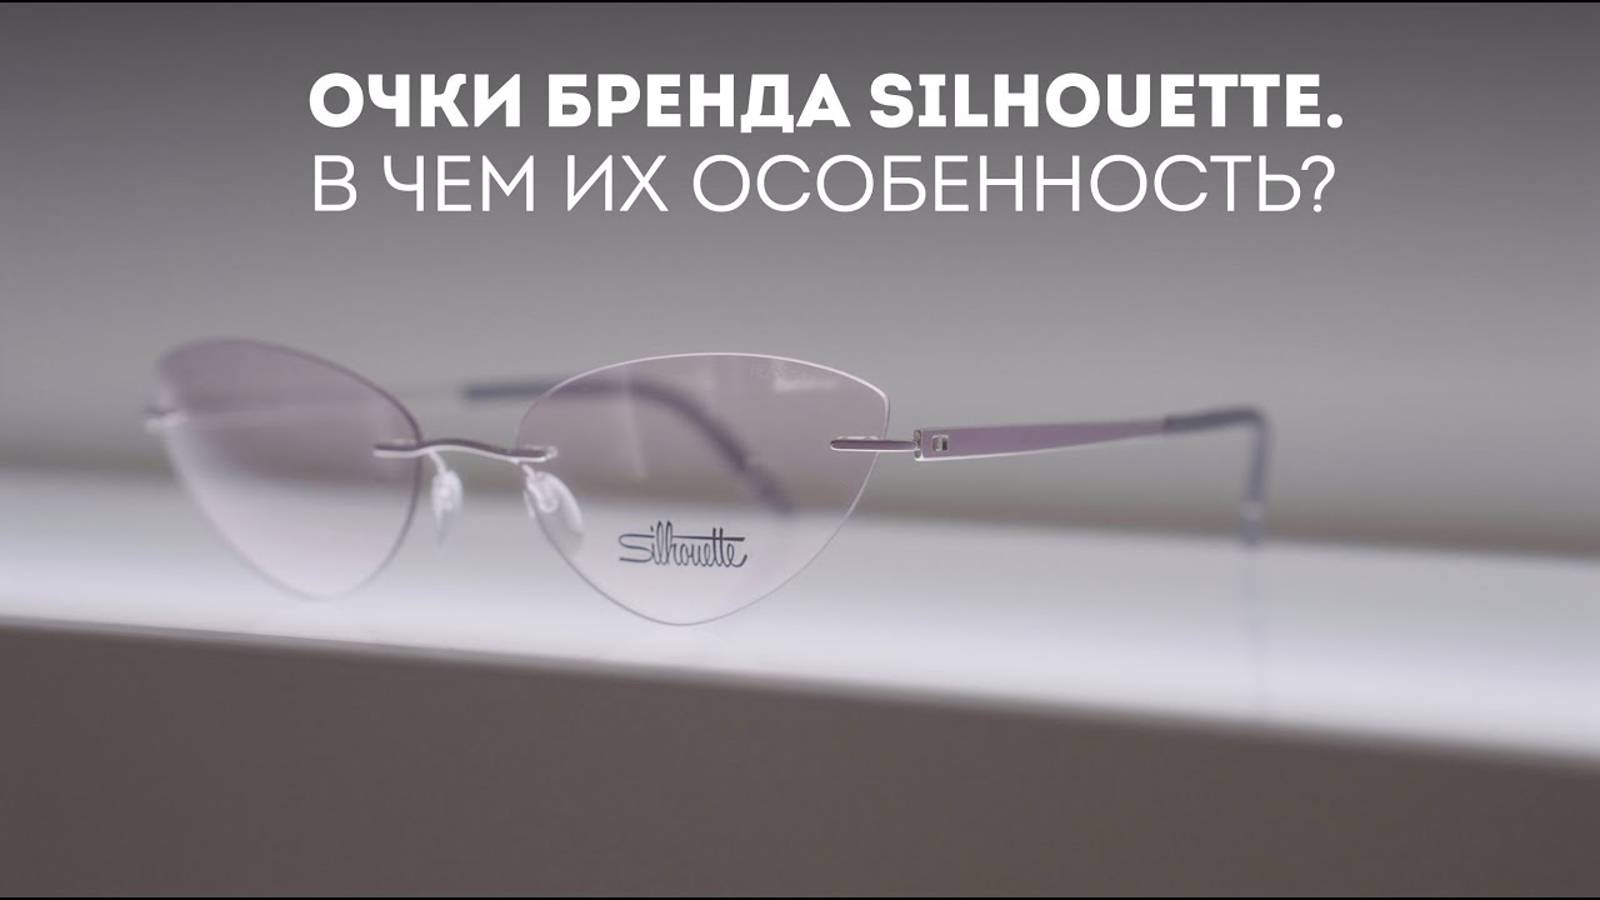 Очки бренда Silhouette. В чем их особенность